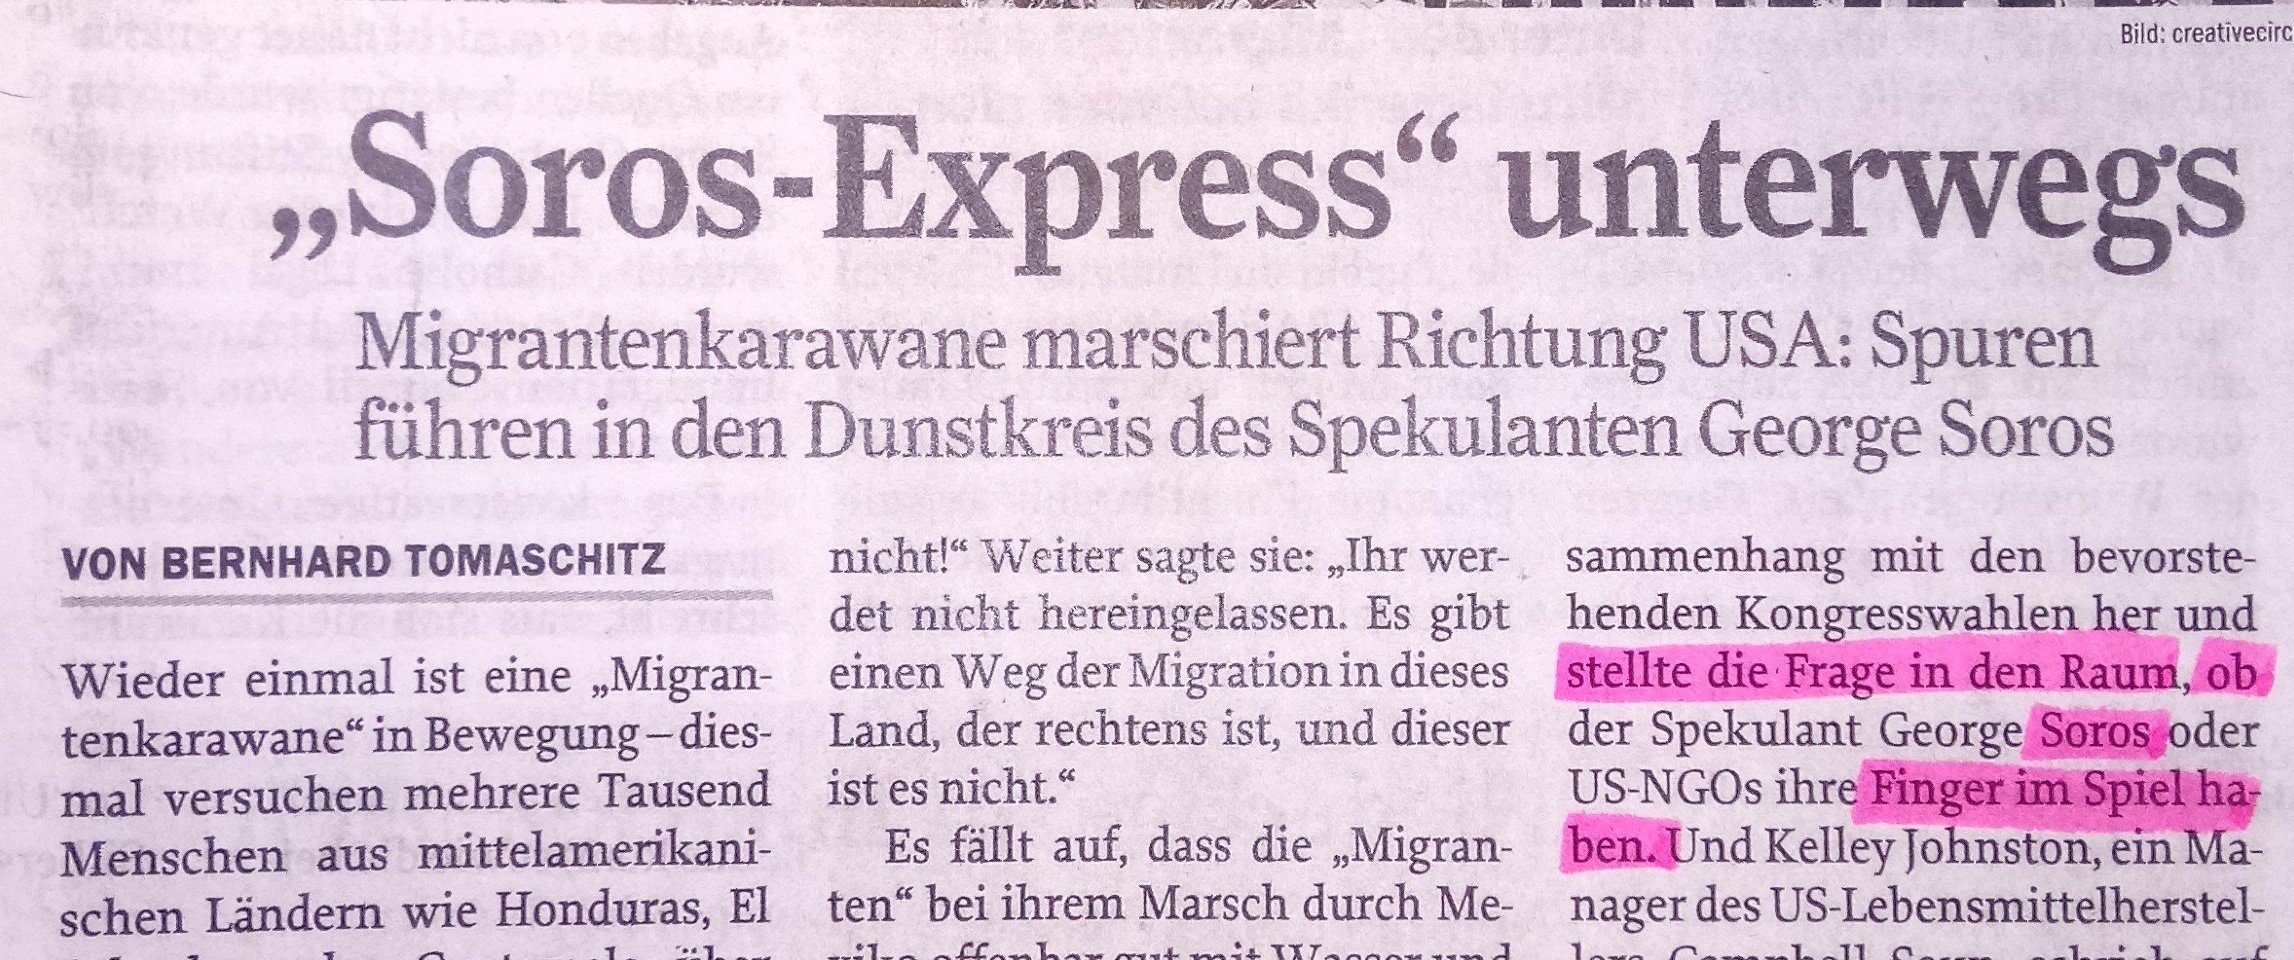 Bernhard Tomaschitz in „Zur Zeit“ Ausgabe 45/18 "Migrantentkarawane" als "Soros-Express"